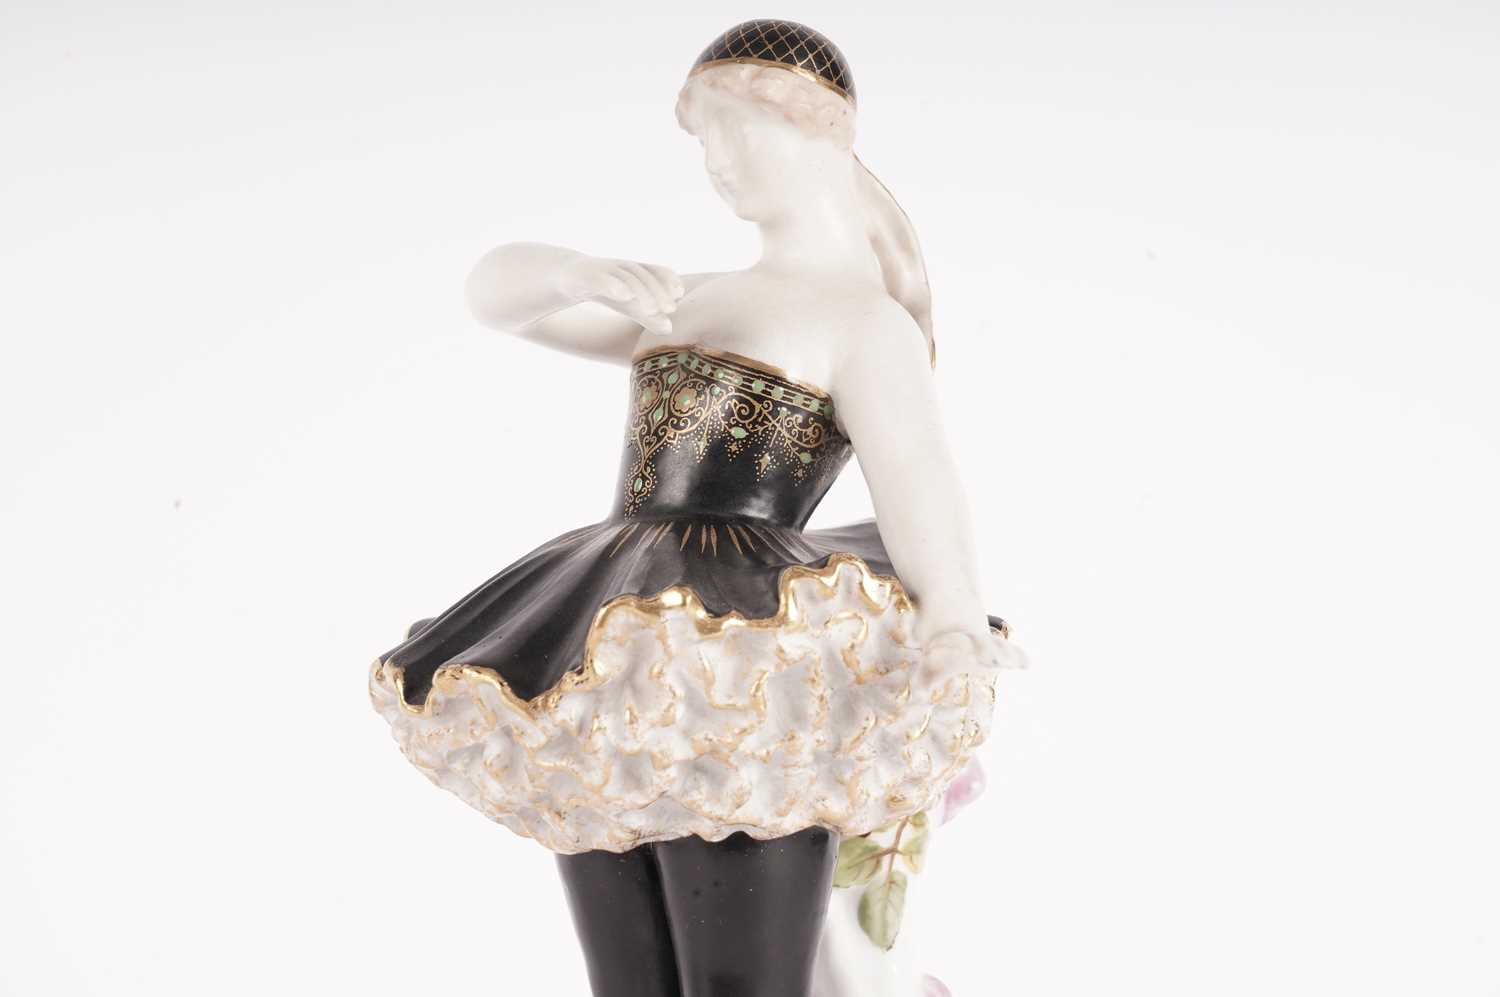 Rare Worcester figure of a ballet dancer - Image 3 of 10